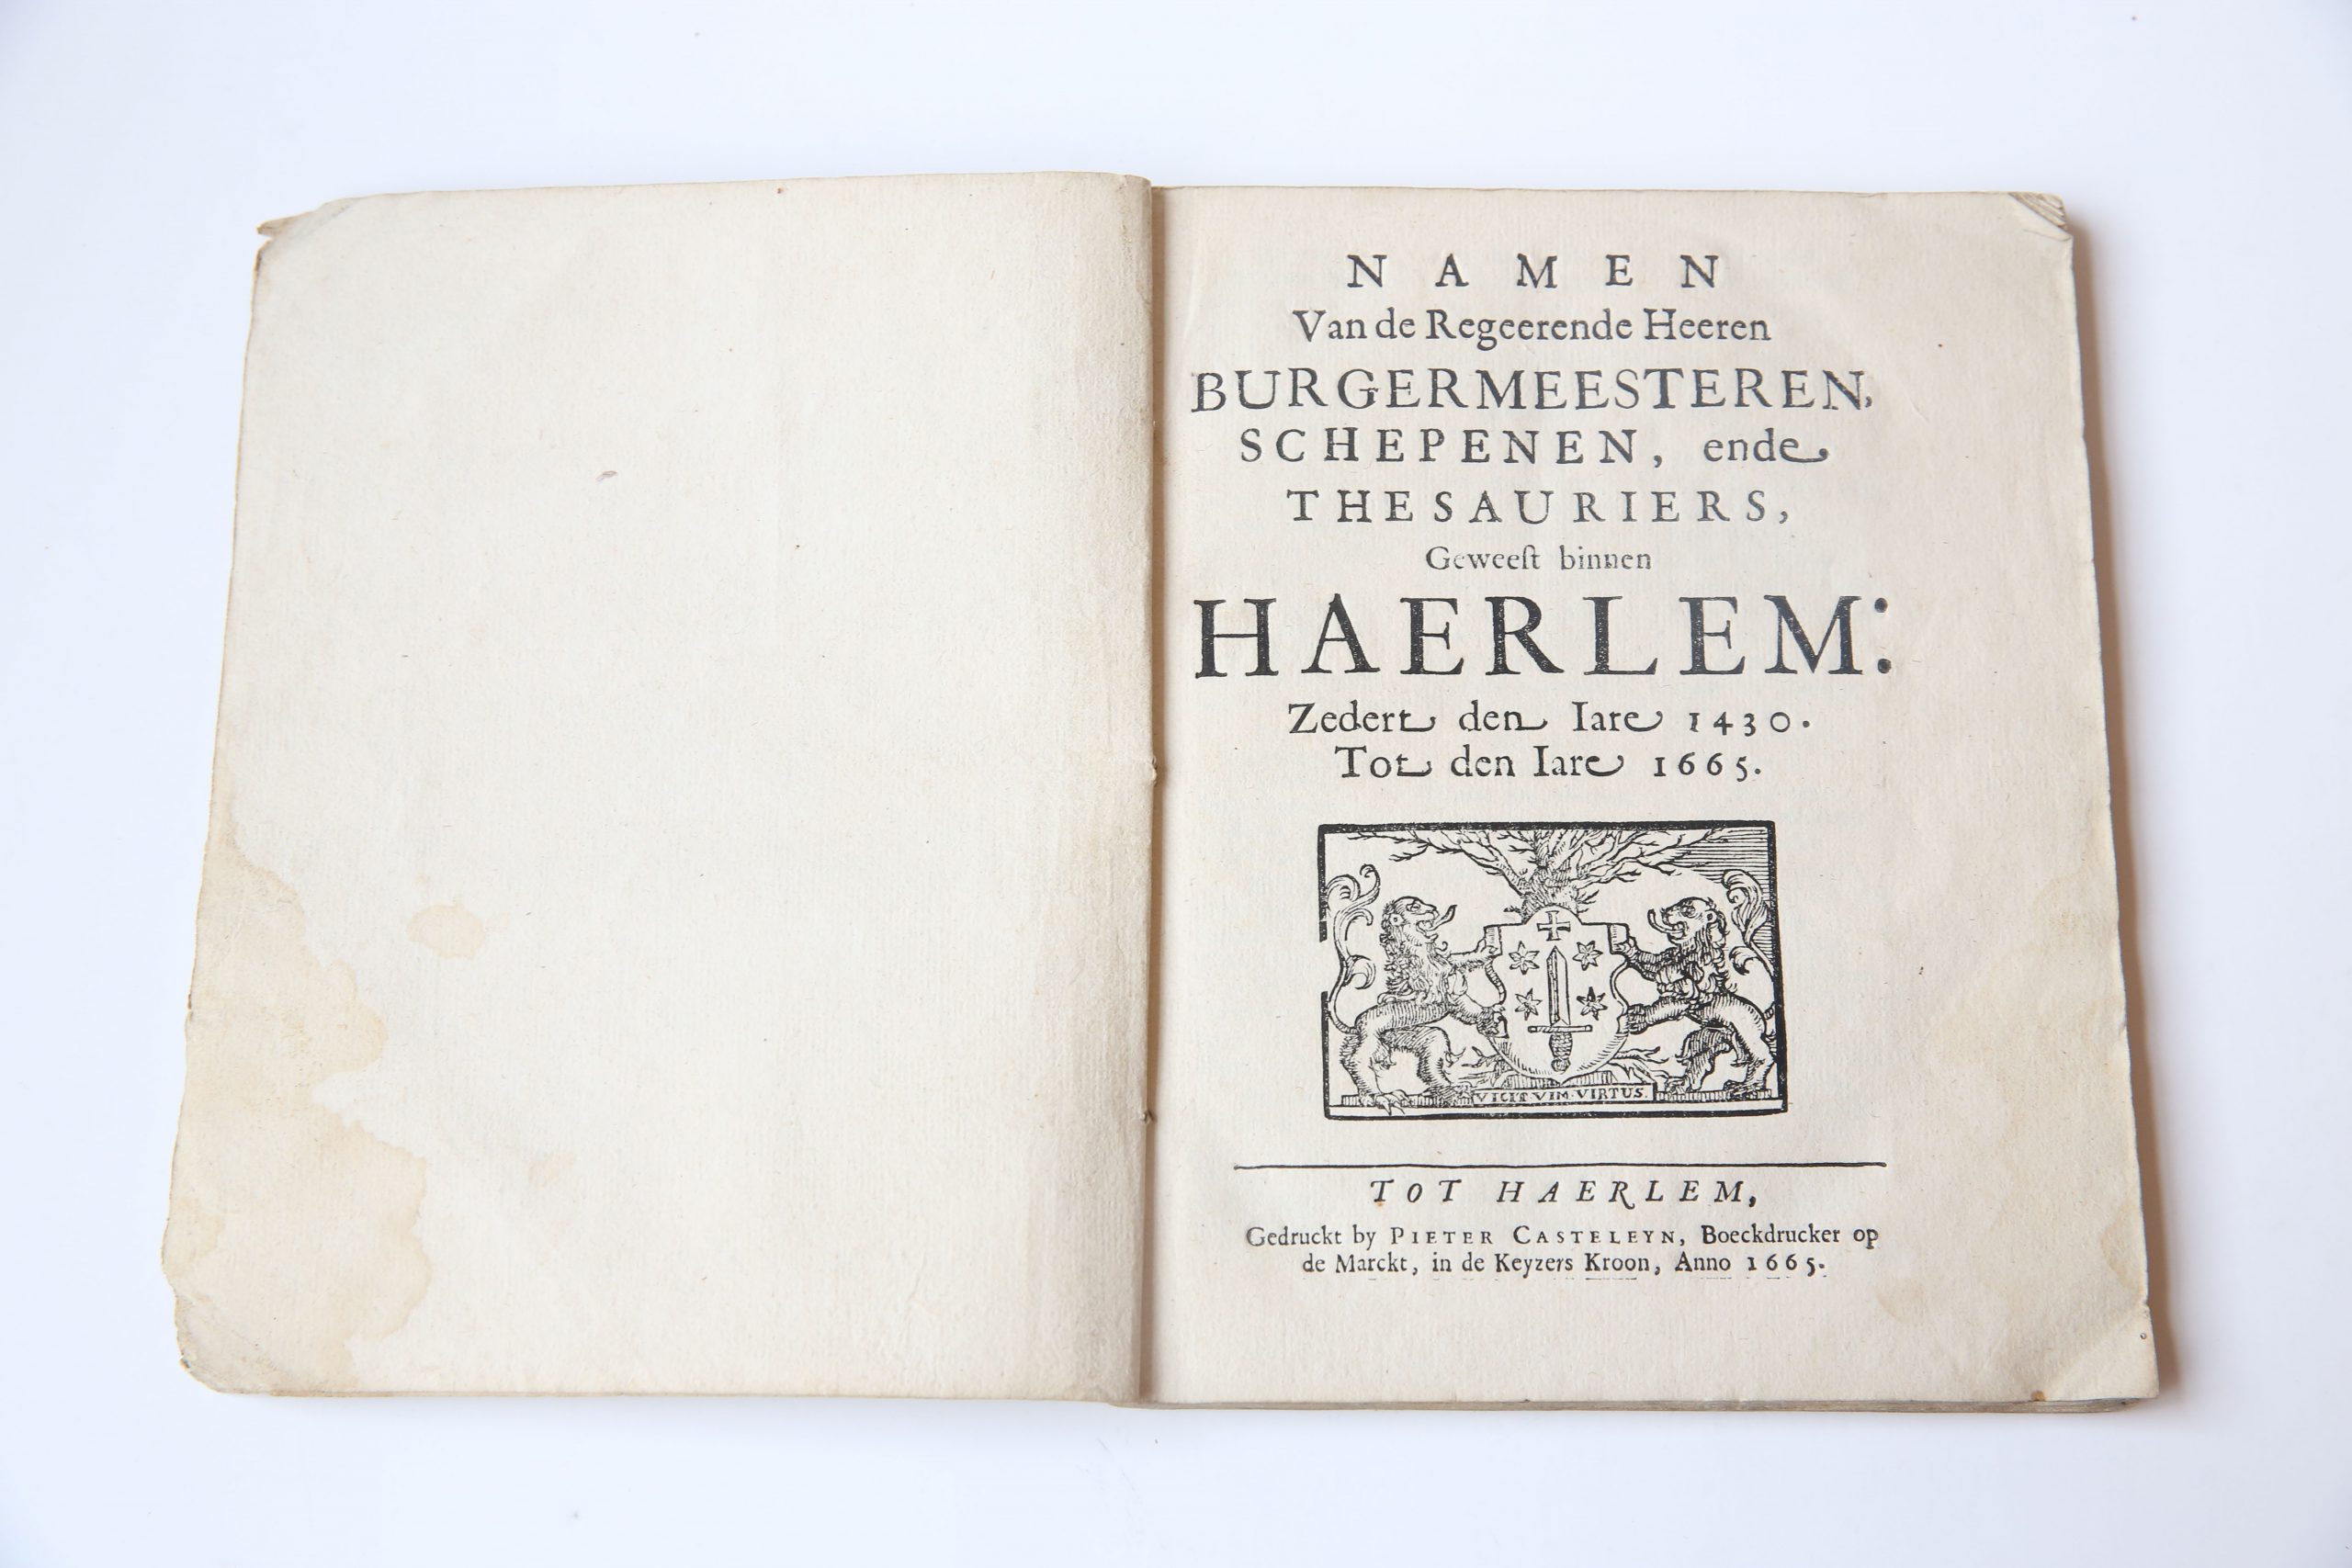  - Namen van de regeerende heeren burgermeesteren, schepenen, ende thesauriers, geweest binnen Haerlem: zedert den iare 1430 tot den iare 1665, Tot Haerlem : gedruckt by Pieter Casteleyn, 1665, 74 pp.